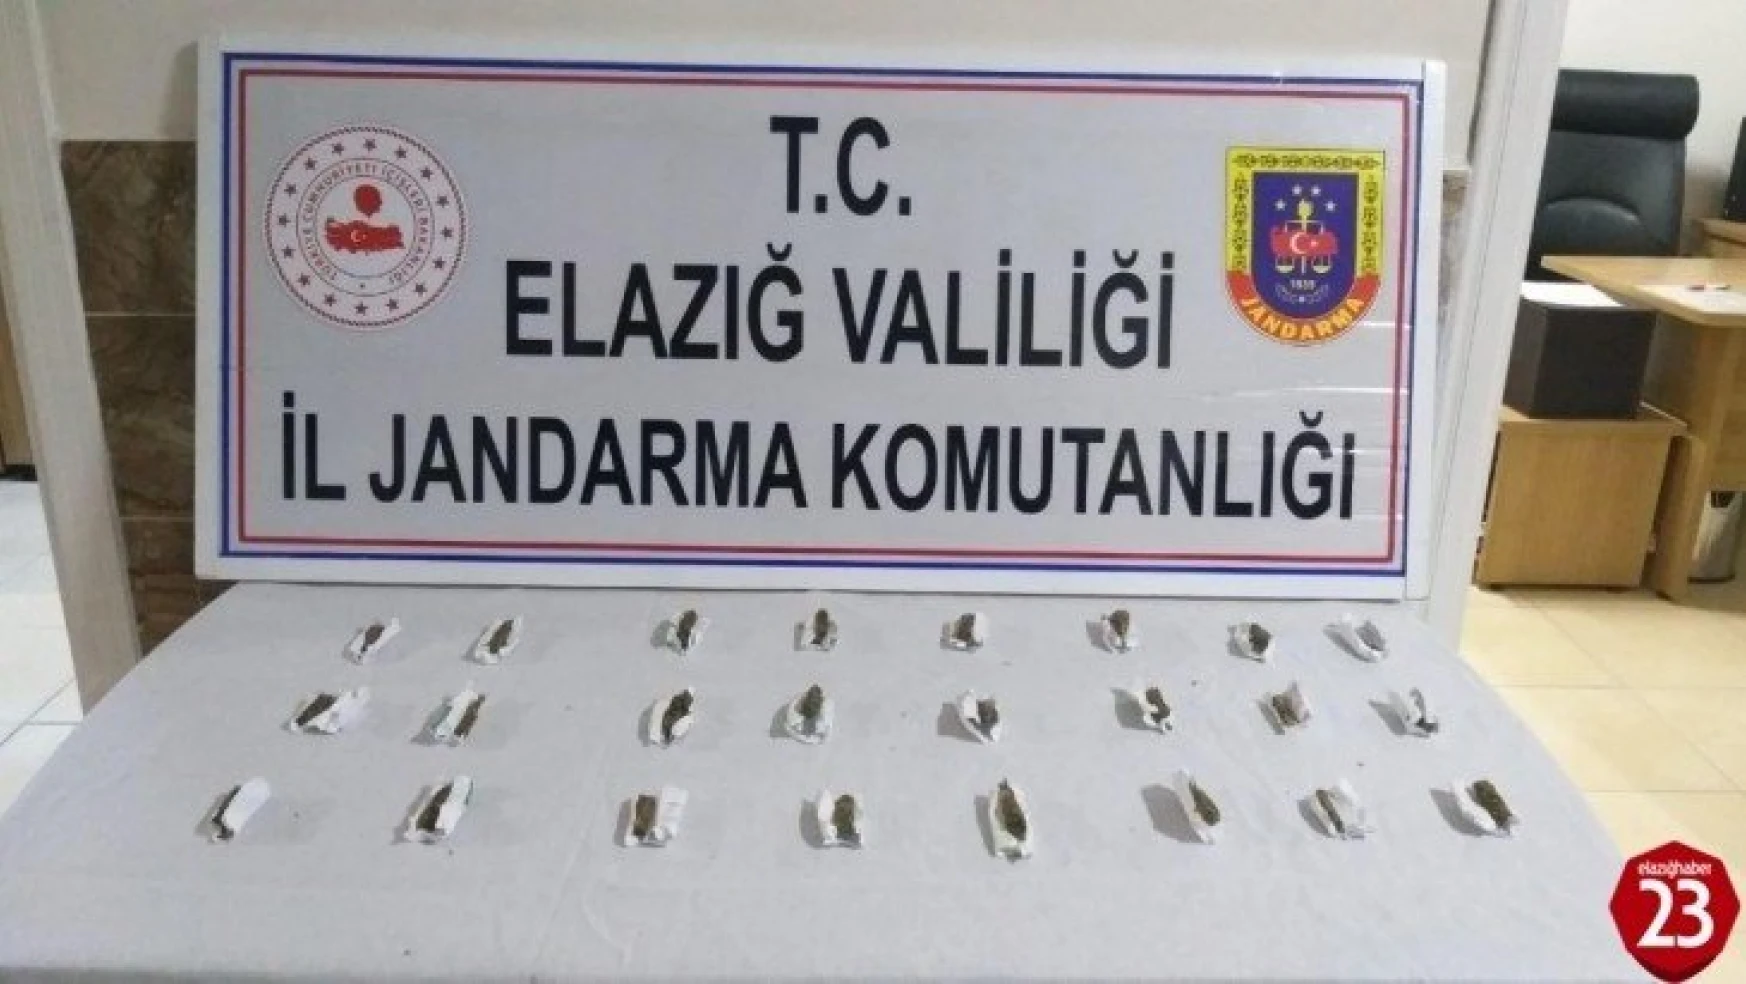 Elazığ'da satışa hazır uyuşturucu paketleri ile 1 şüpheli yakalandı